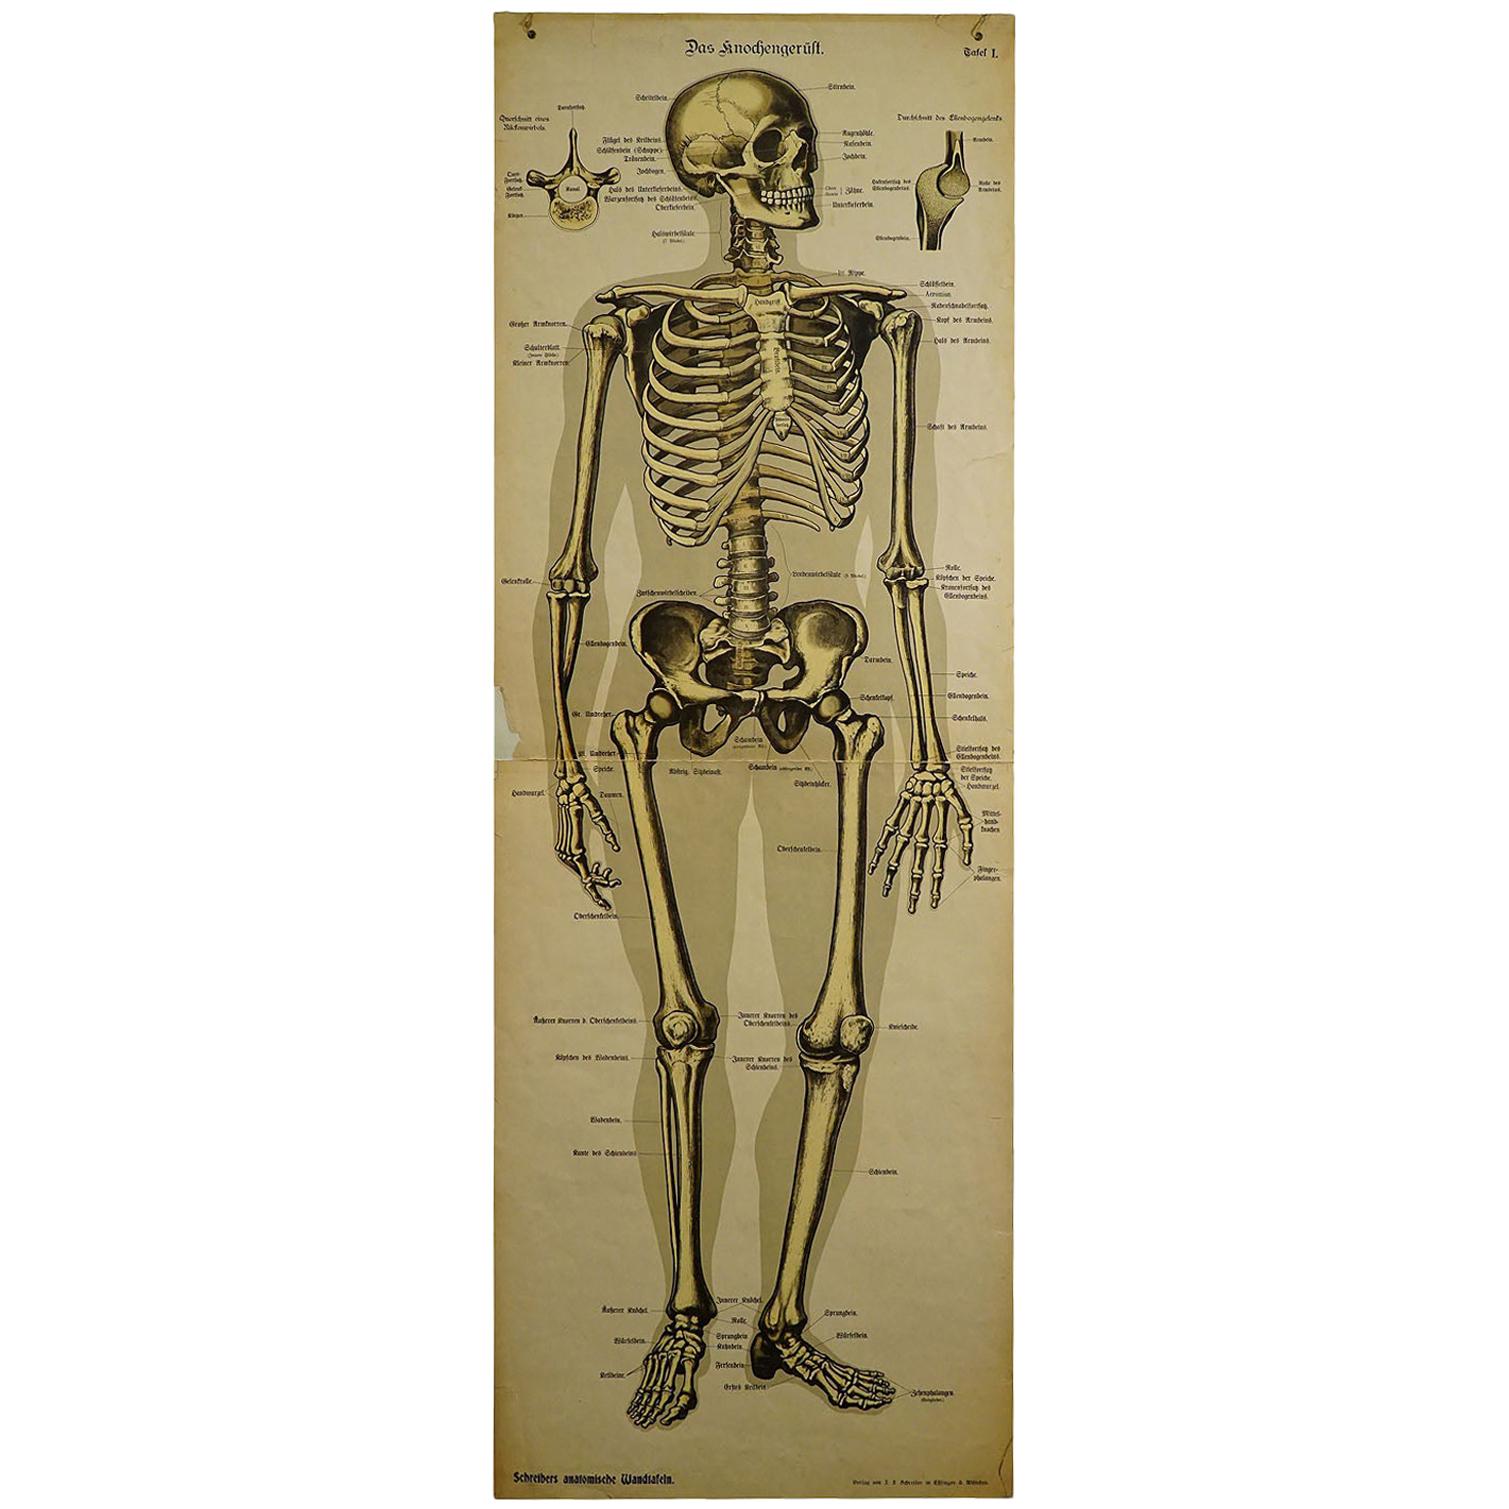 Tableau mural anatomique ancien représentant un squelette humain